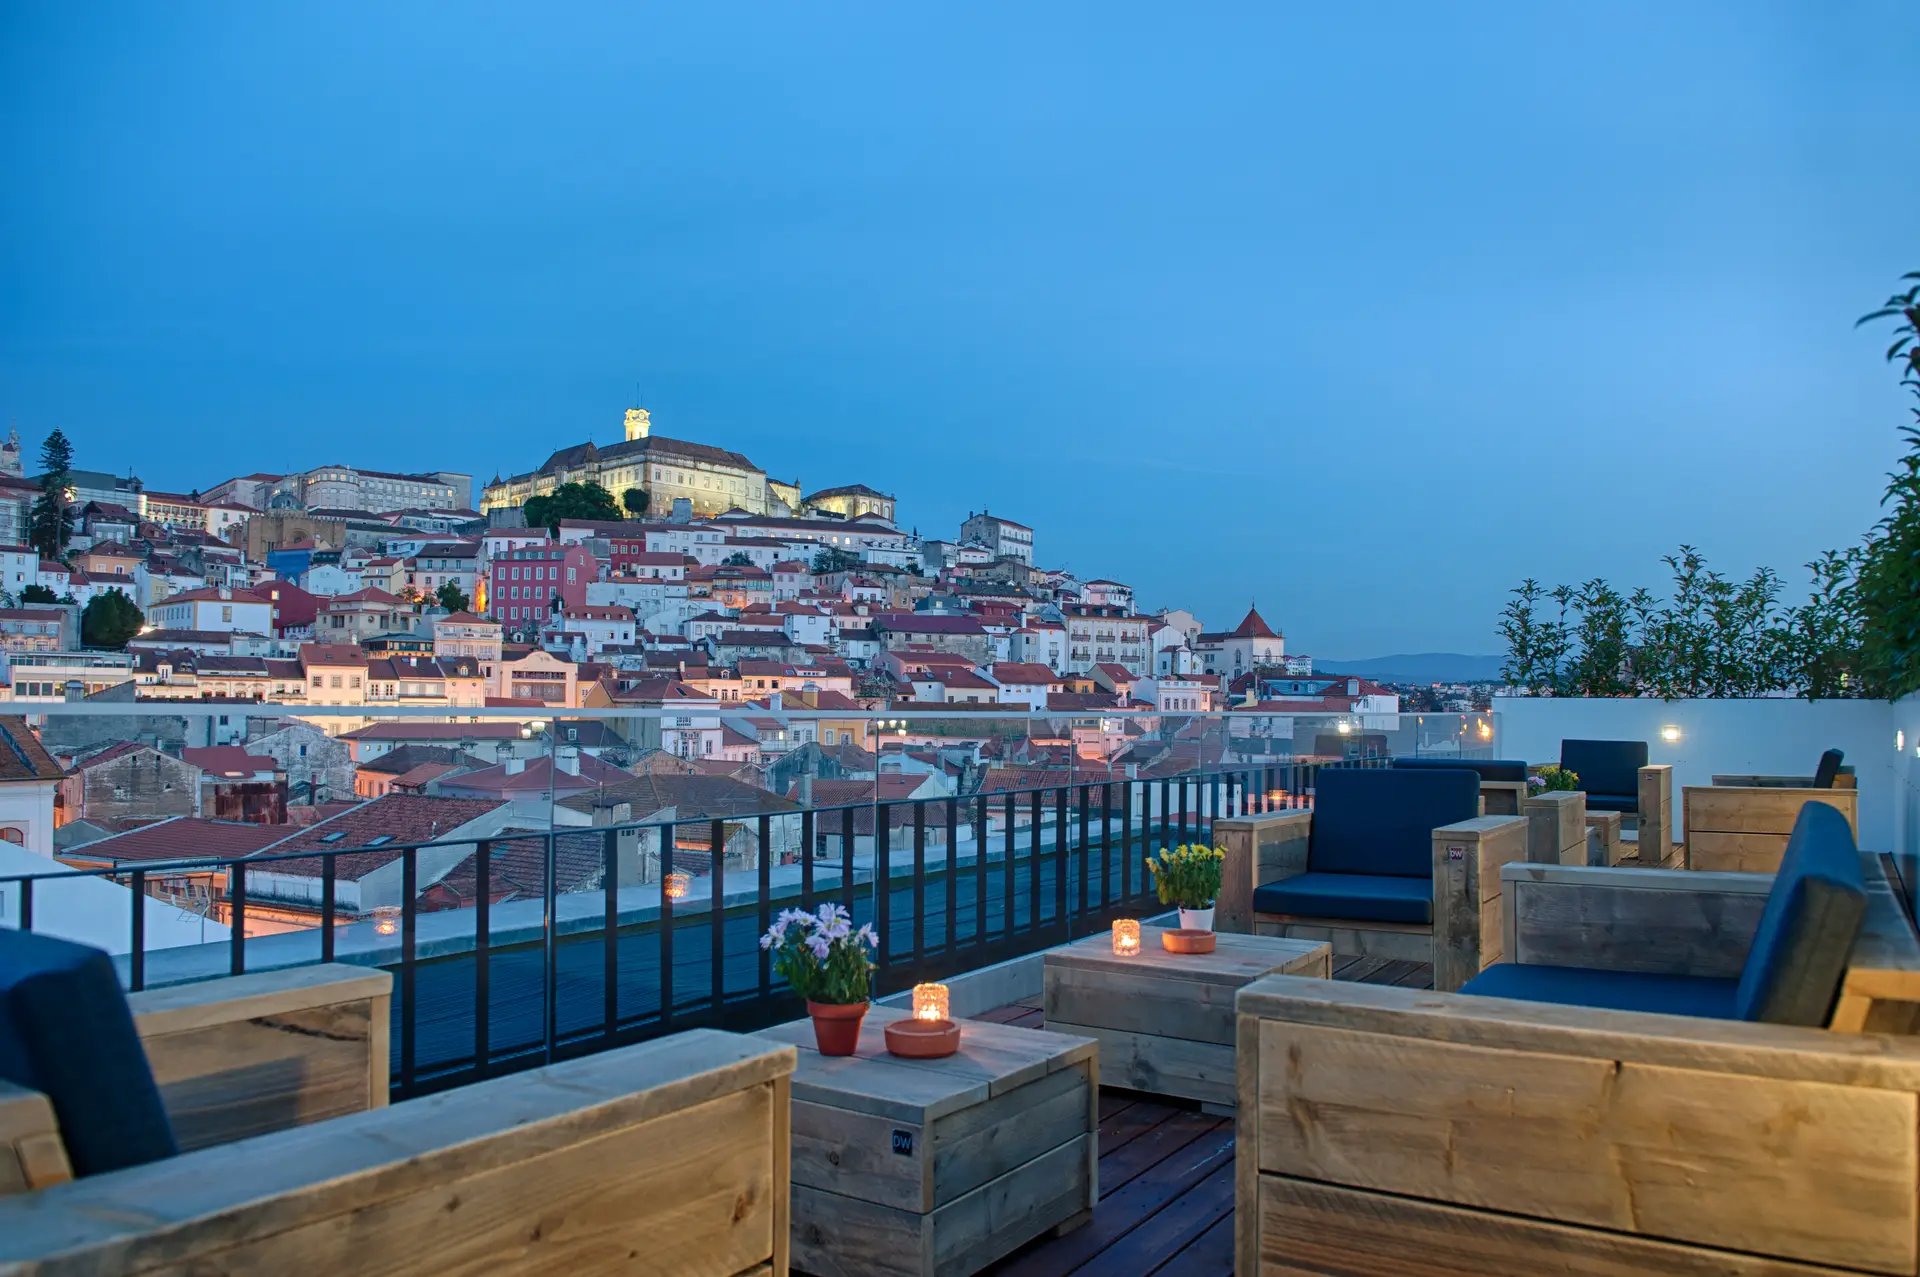 Oito terraços para admirar Coimbra e a beleza do Mondego